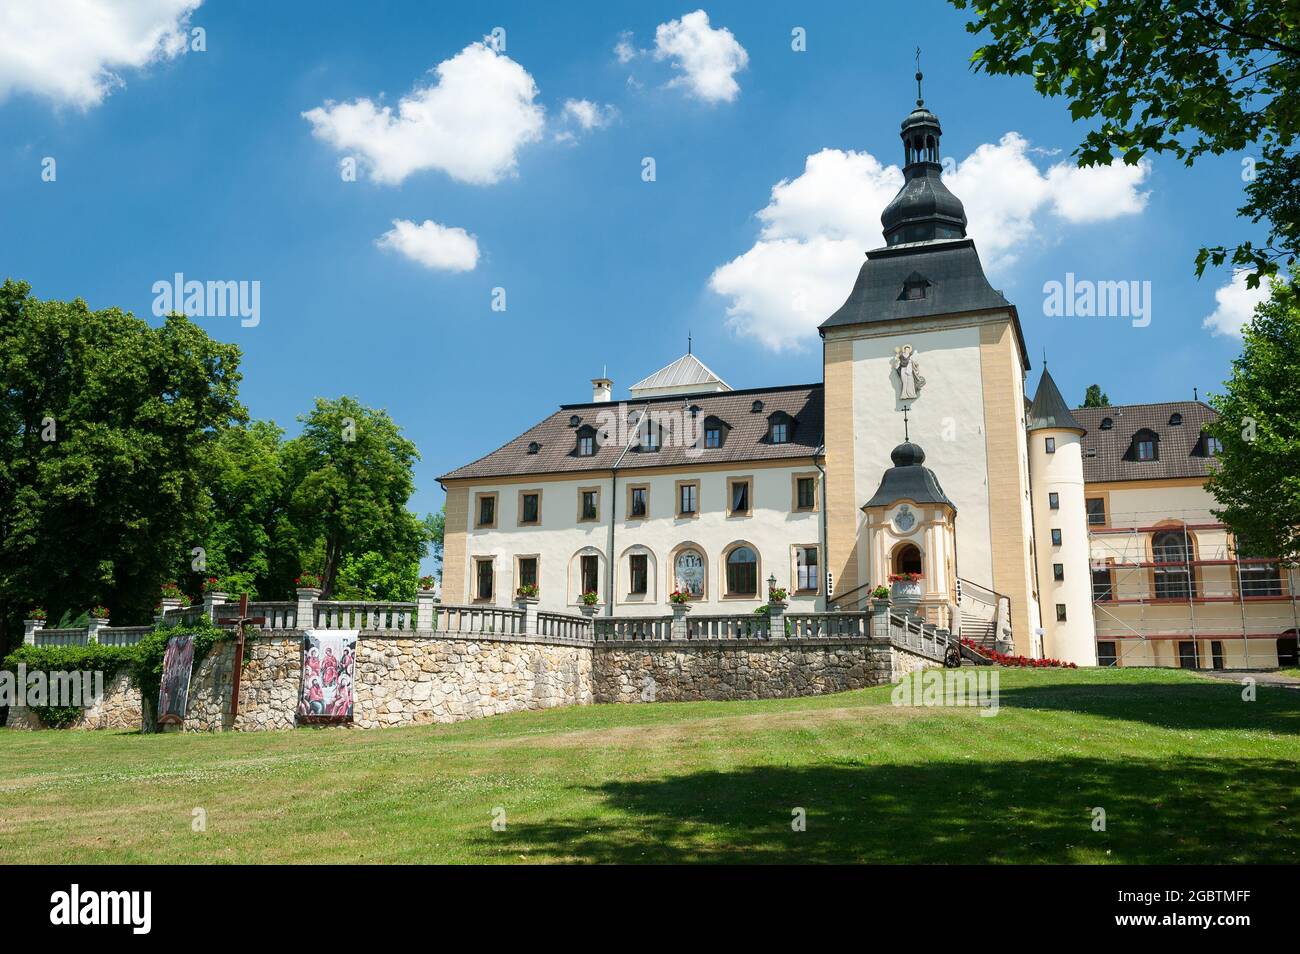 Palast in Kamień Śląski, Gmina Gogolin, im Kreis Krapkowice, Woiwodschaft Opole, im Südwesten Polens. Stockfoto